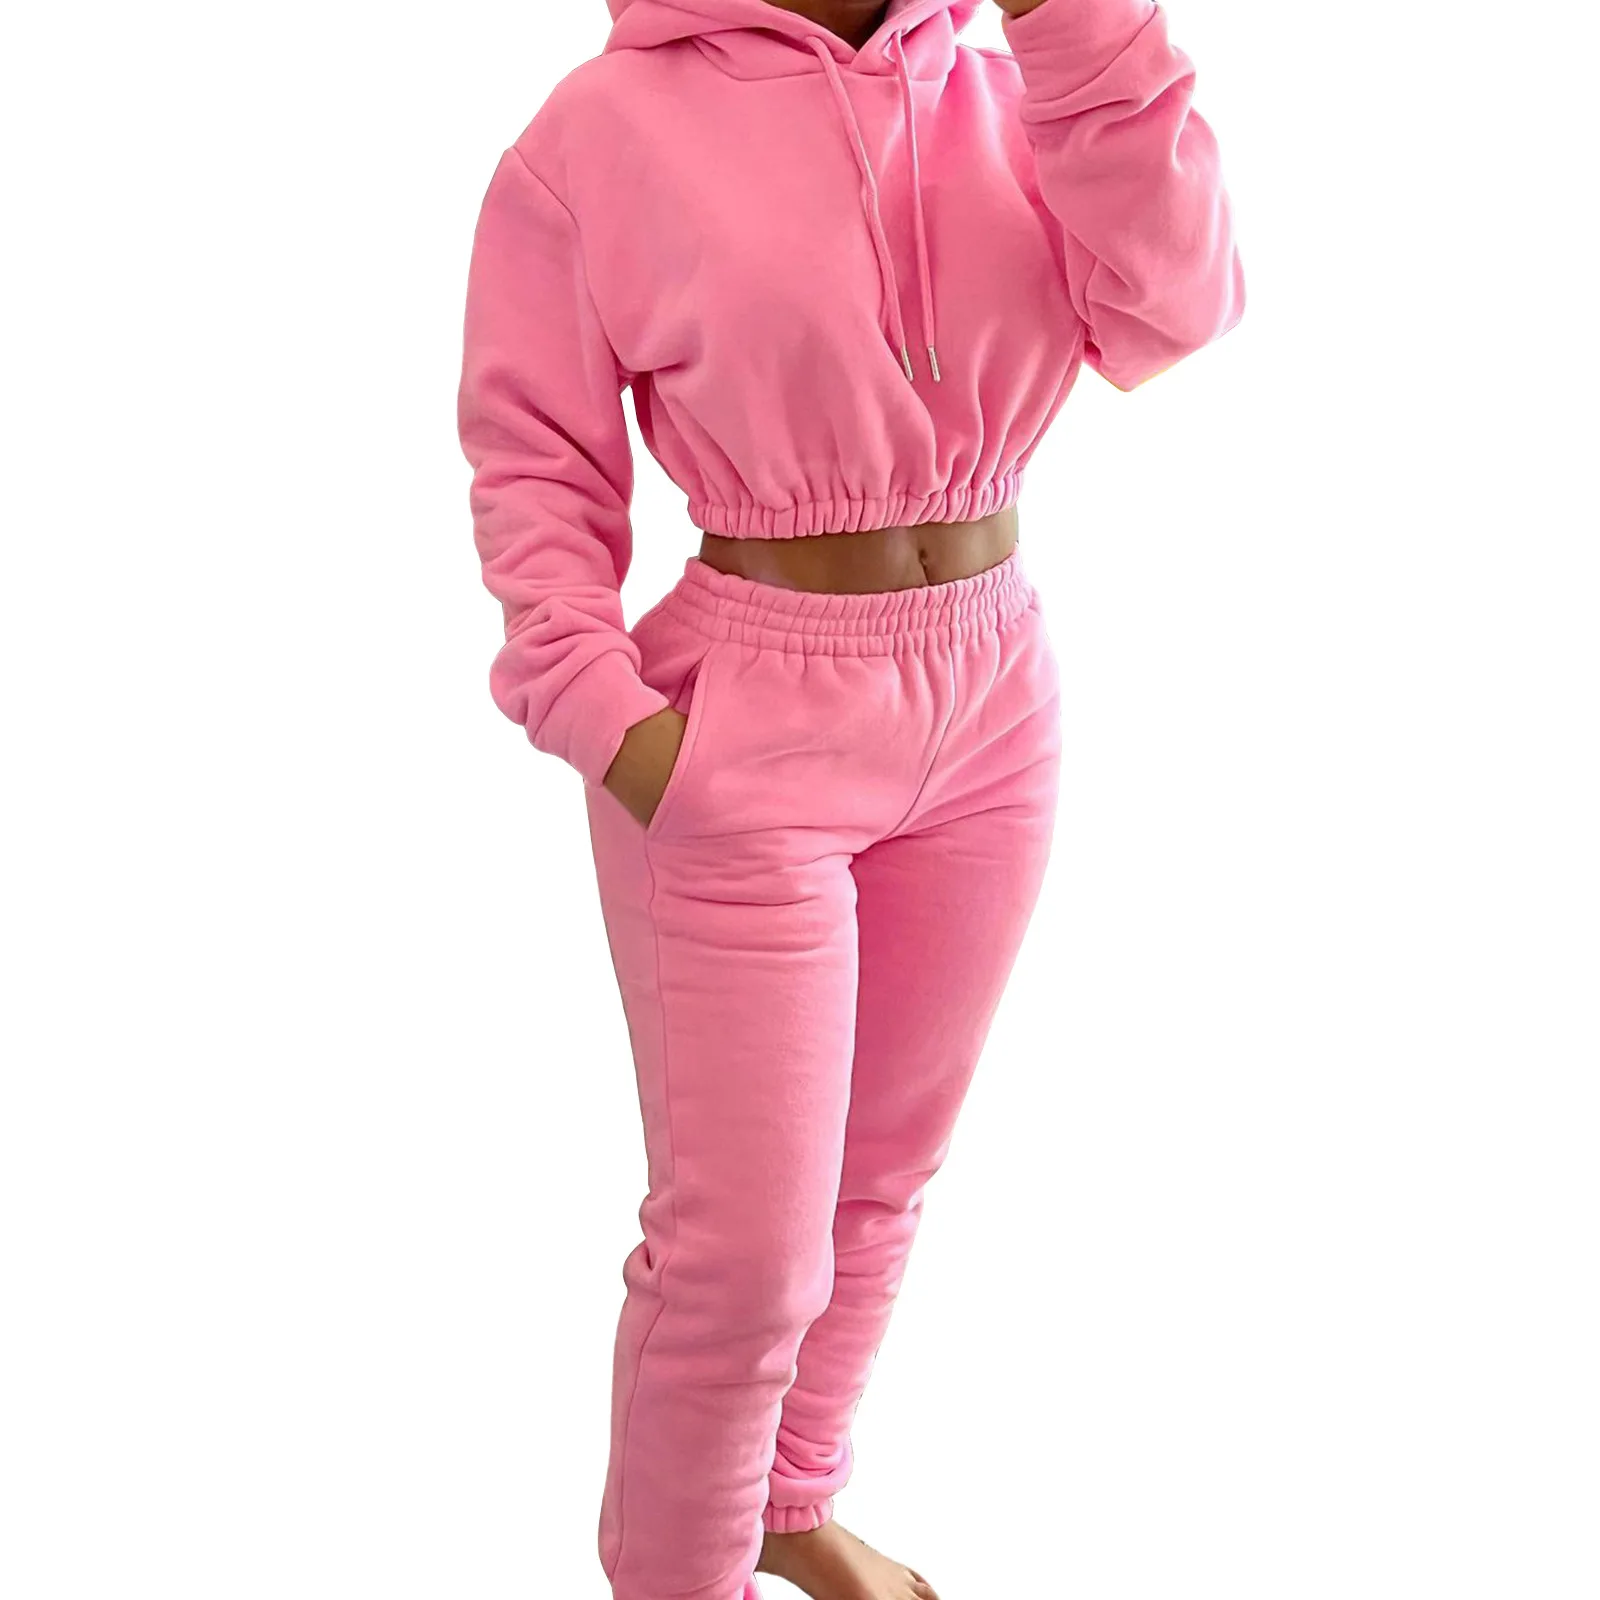 Custom Conjuntos Para Mujeres Fleece Women 2 Piece Jogging Suit Crop ...